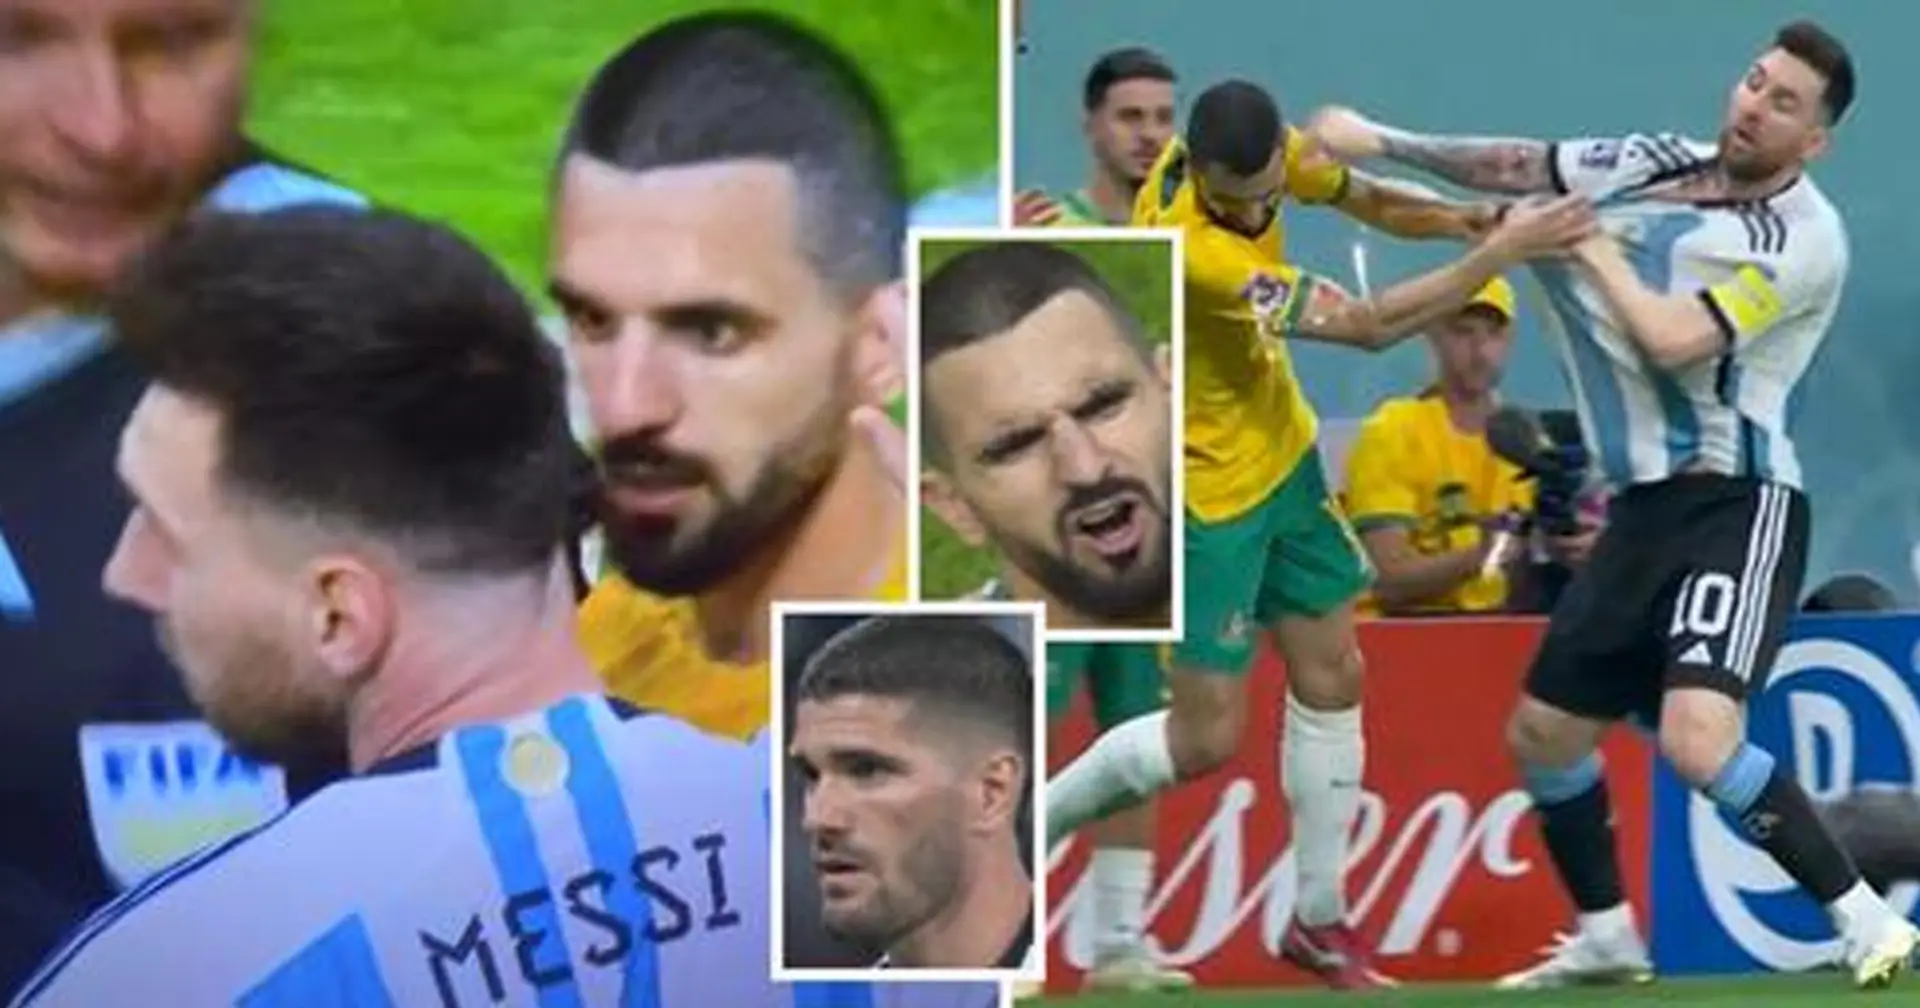 Verärgert Leo nicht: Australier greift Messi an und bereut es Sekunden später